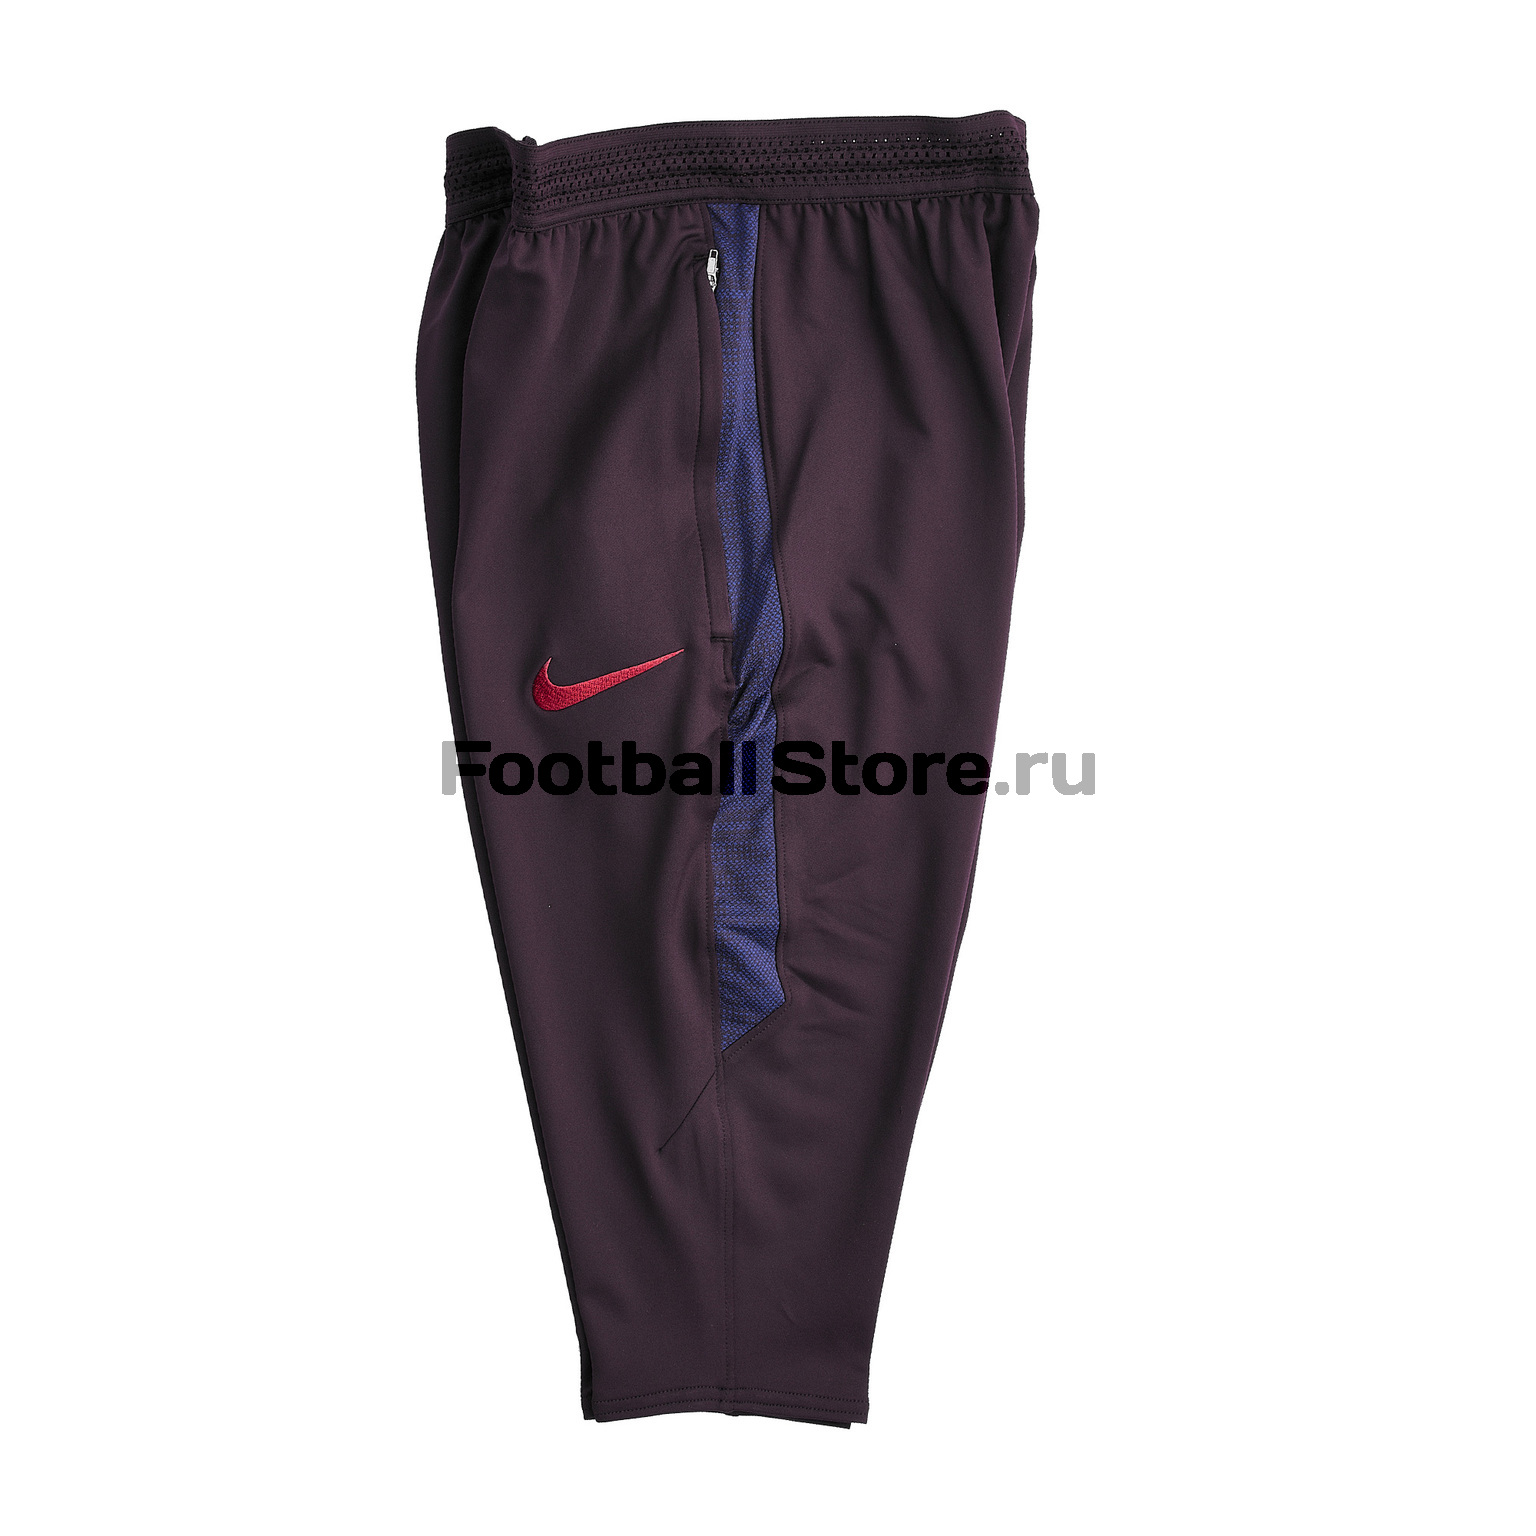 Бриджи Nike Barcelona Dry Pant 3/4 AO5194-659